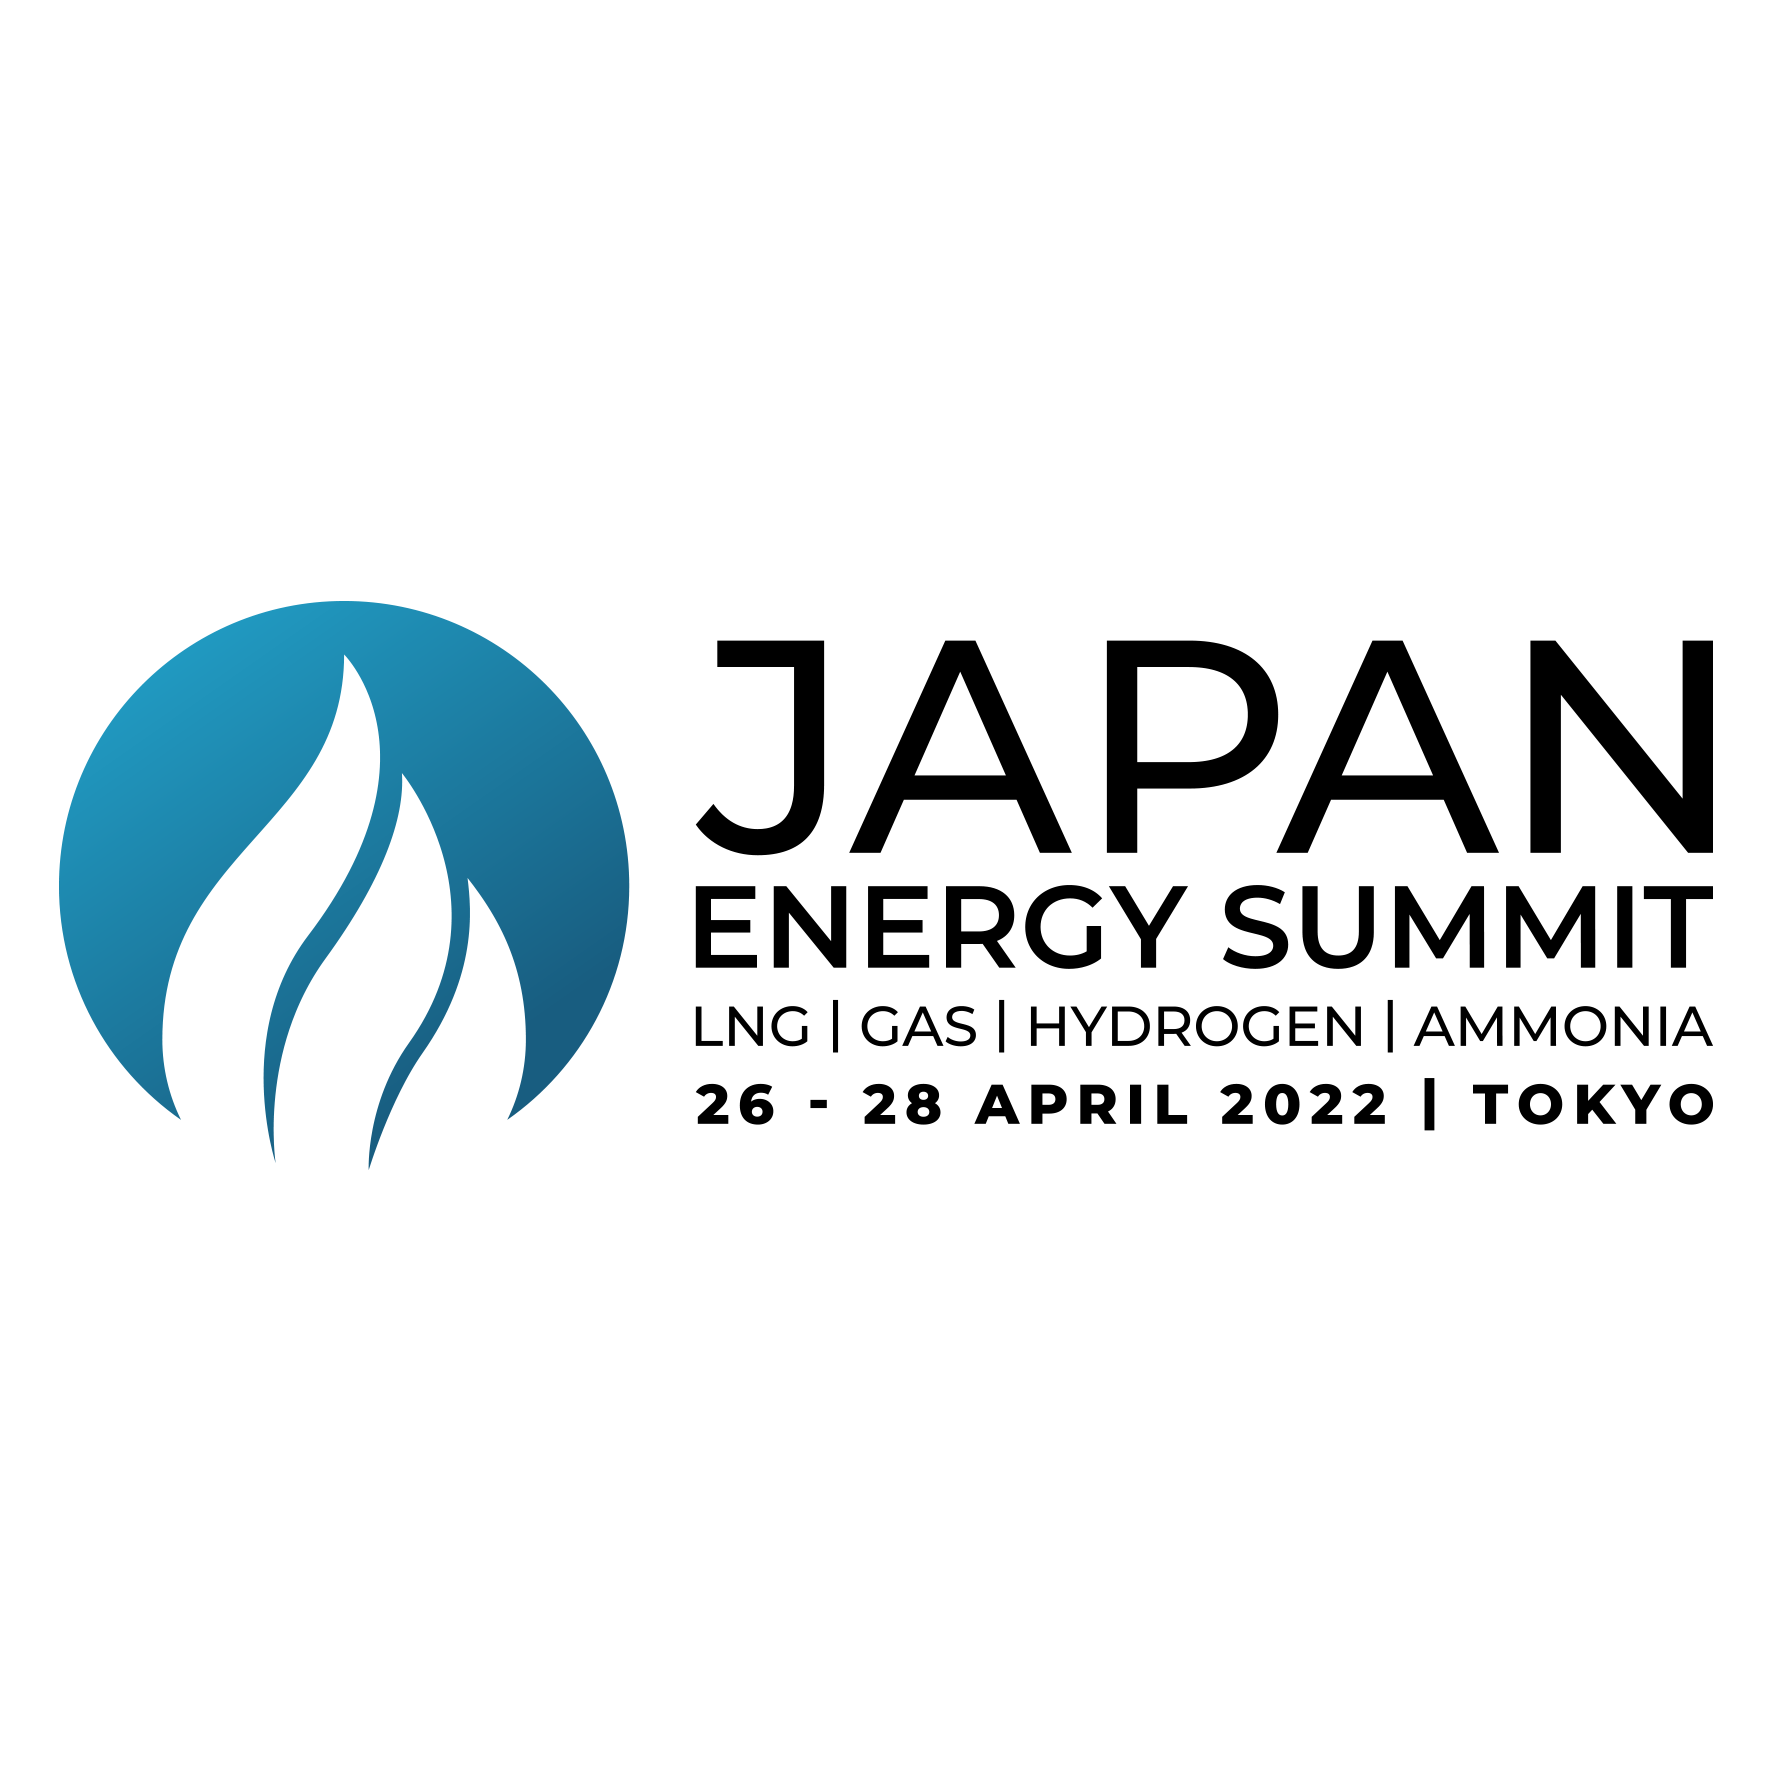 energy dias client logo